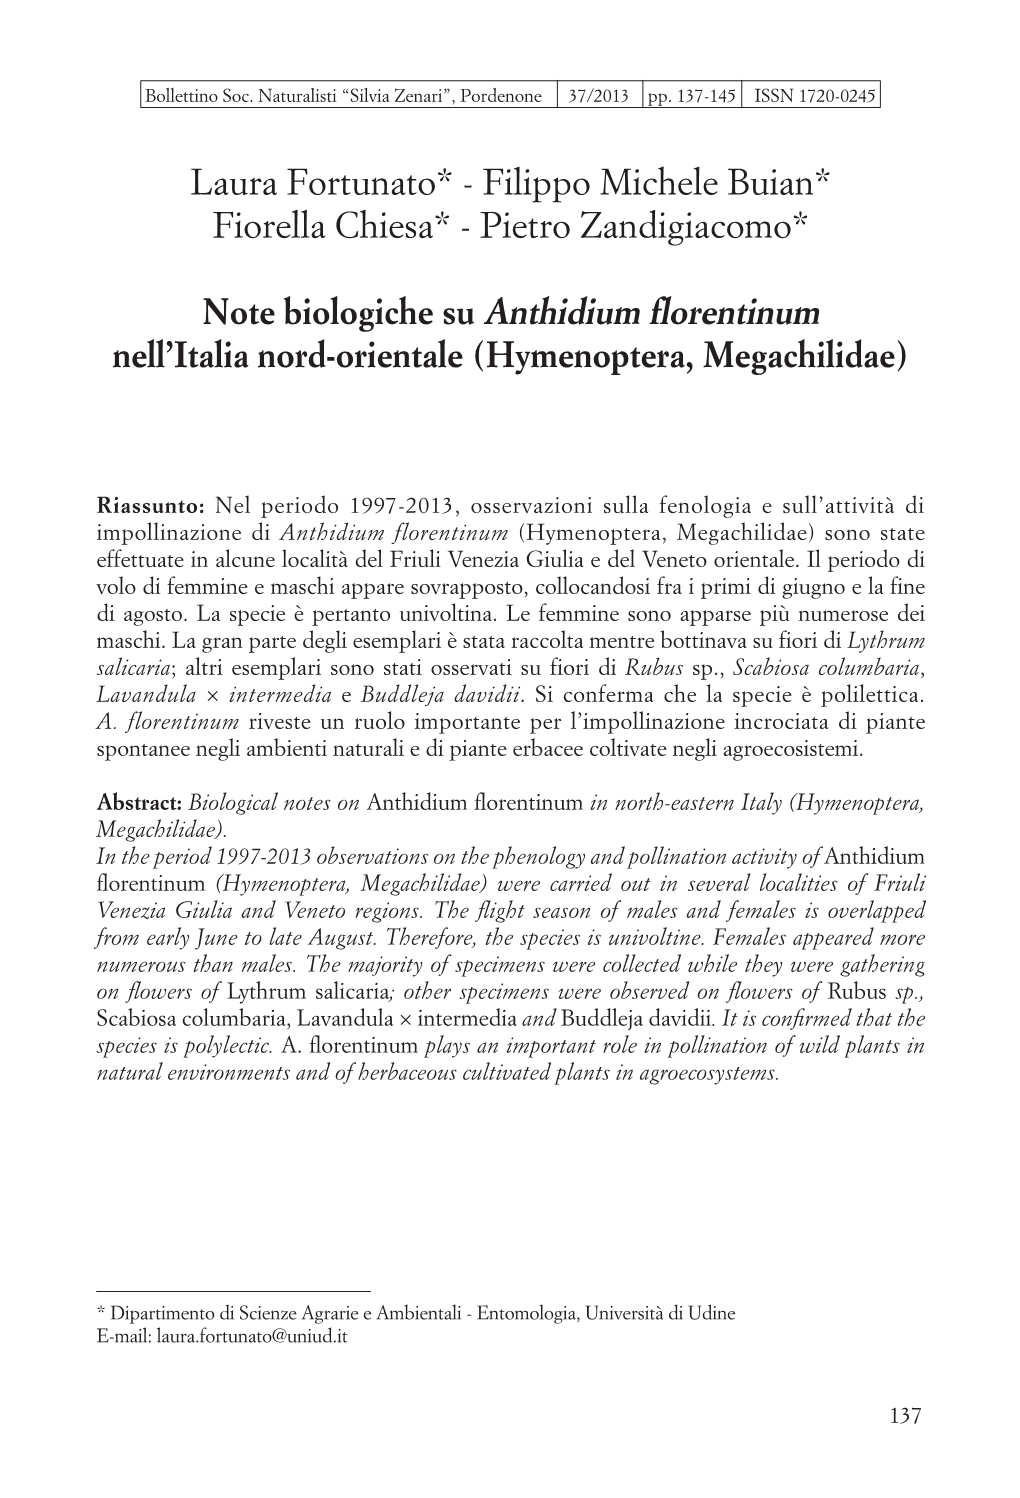 Anthidium Florentinum in FVG.Pdf